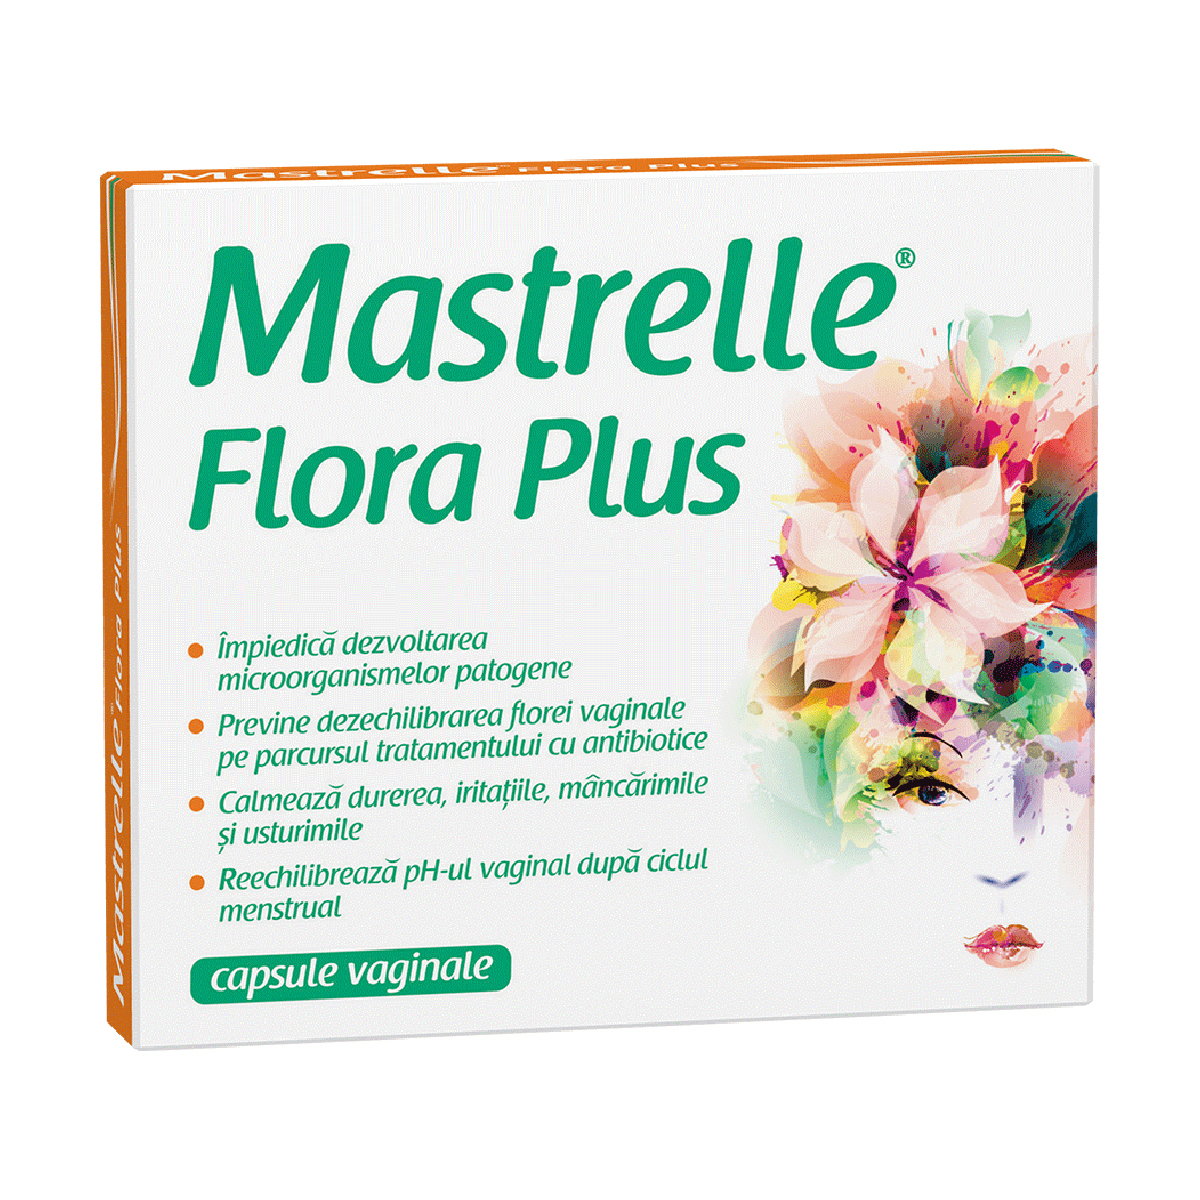 Mastrelle Flora Plus, 10 capsule vaginale Mastrelle